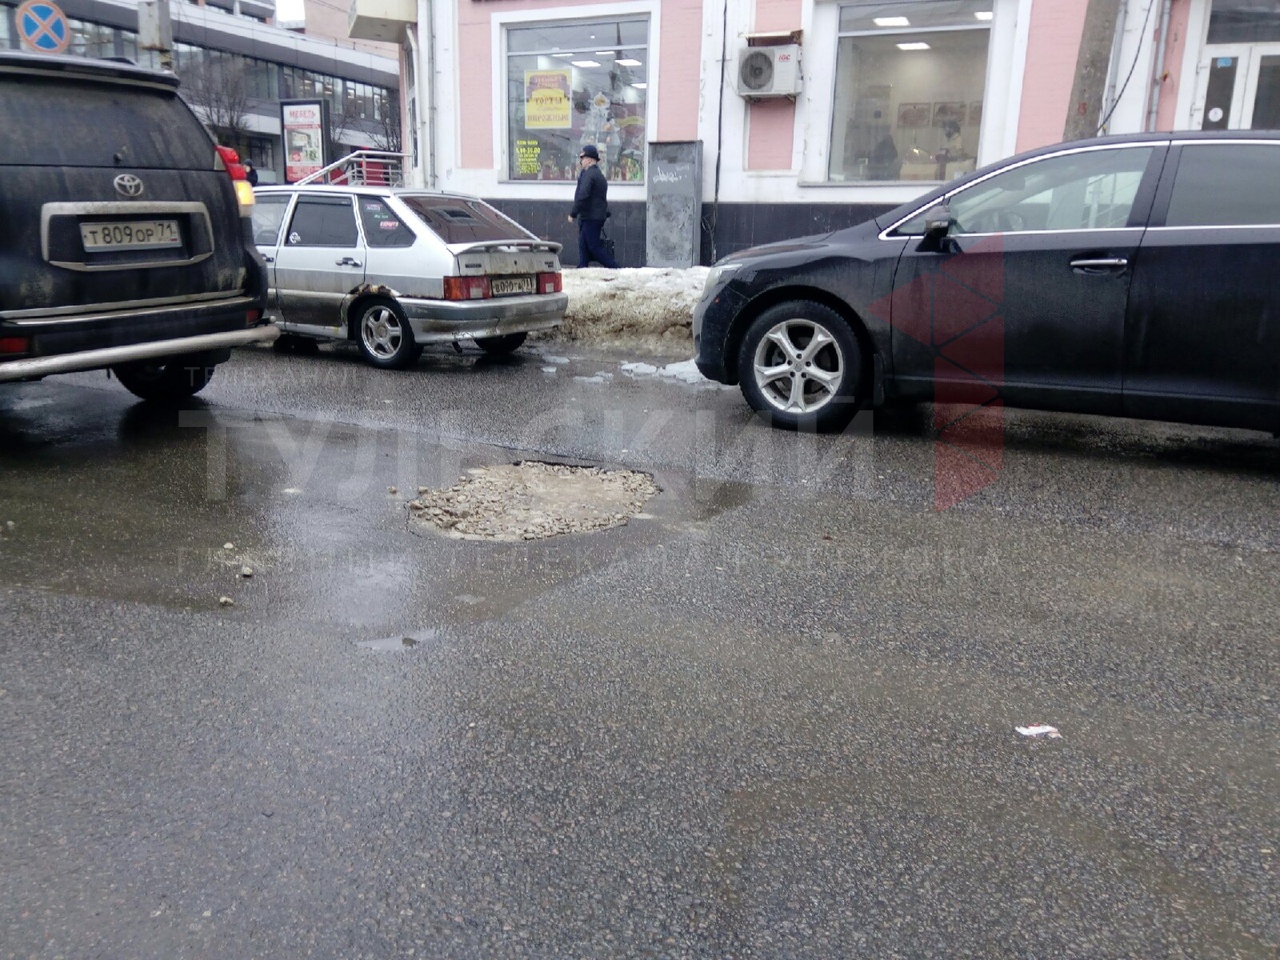 Ямочный ремонт в действии: в Туле на улице Каминского засыпали провал